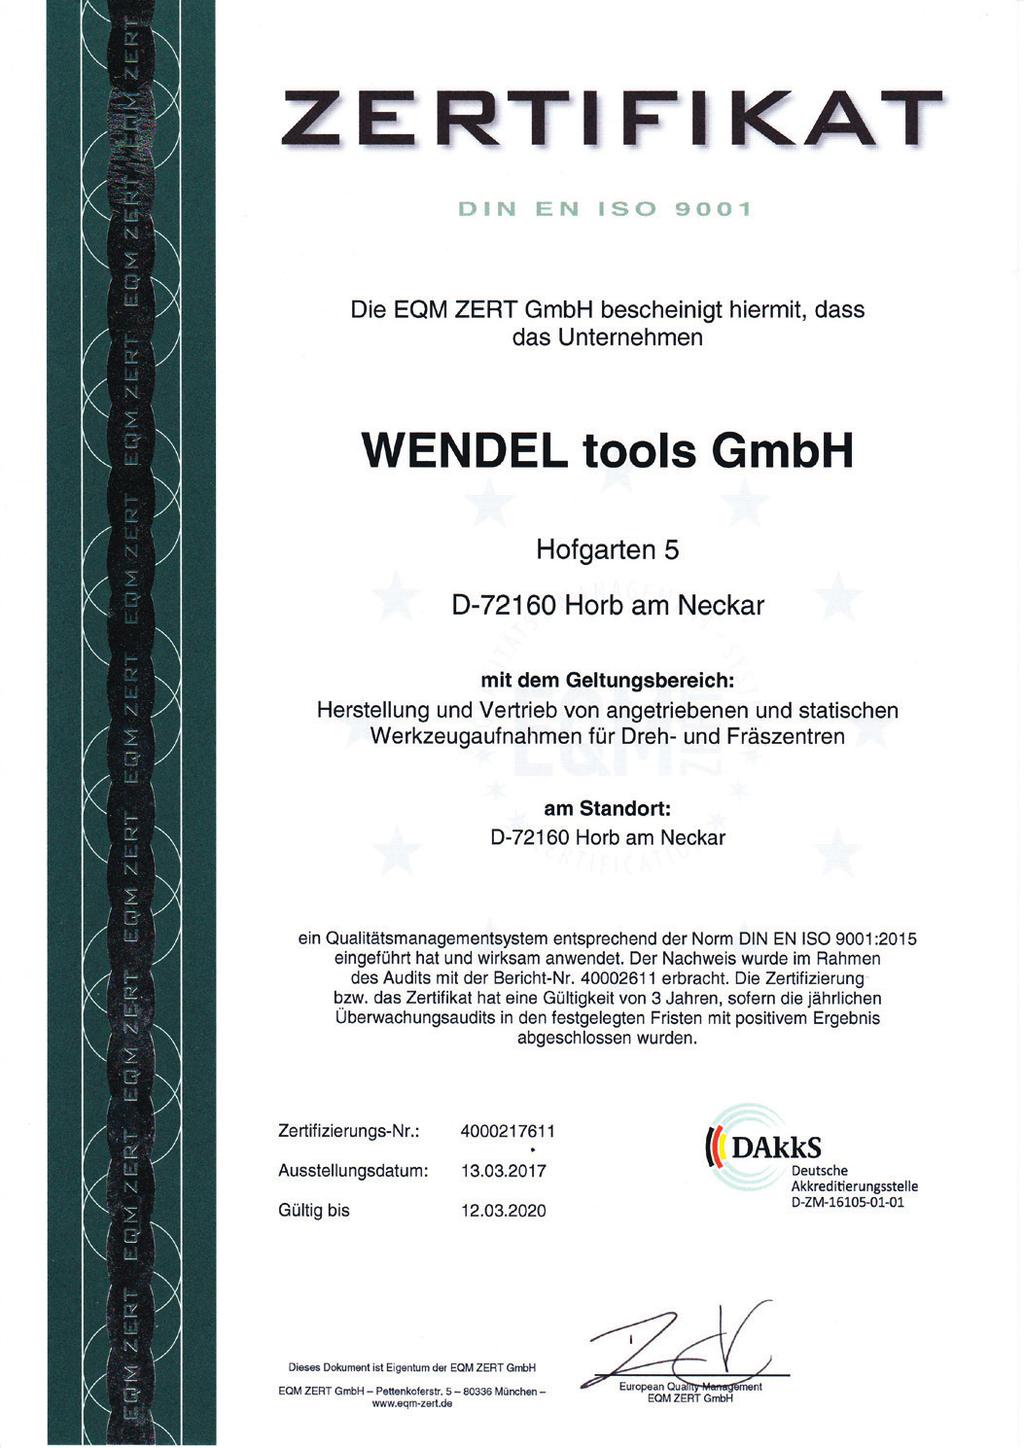 Wir sind zertifiziert nach DIN EN ISO 9001. We are certified to DIN EN ISO 9001.